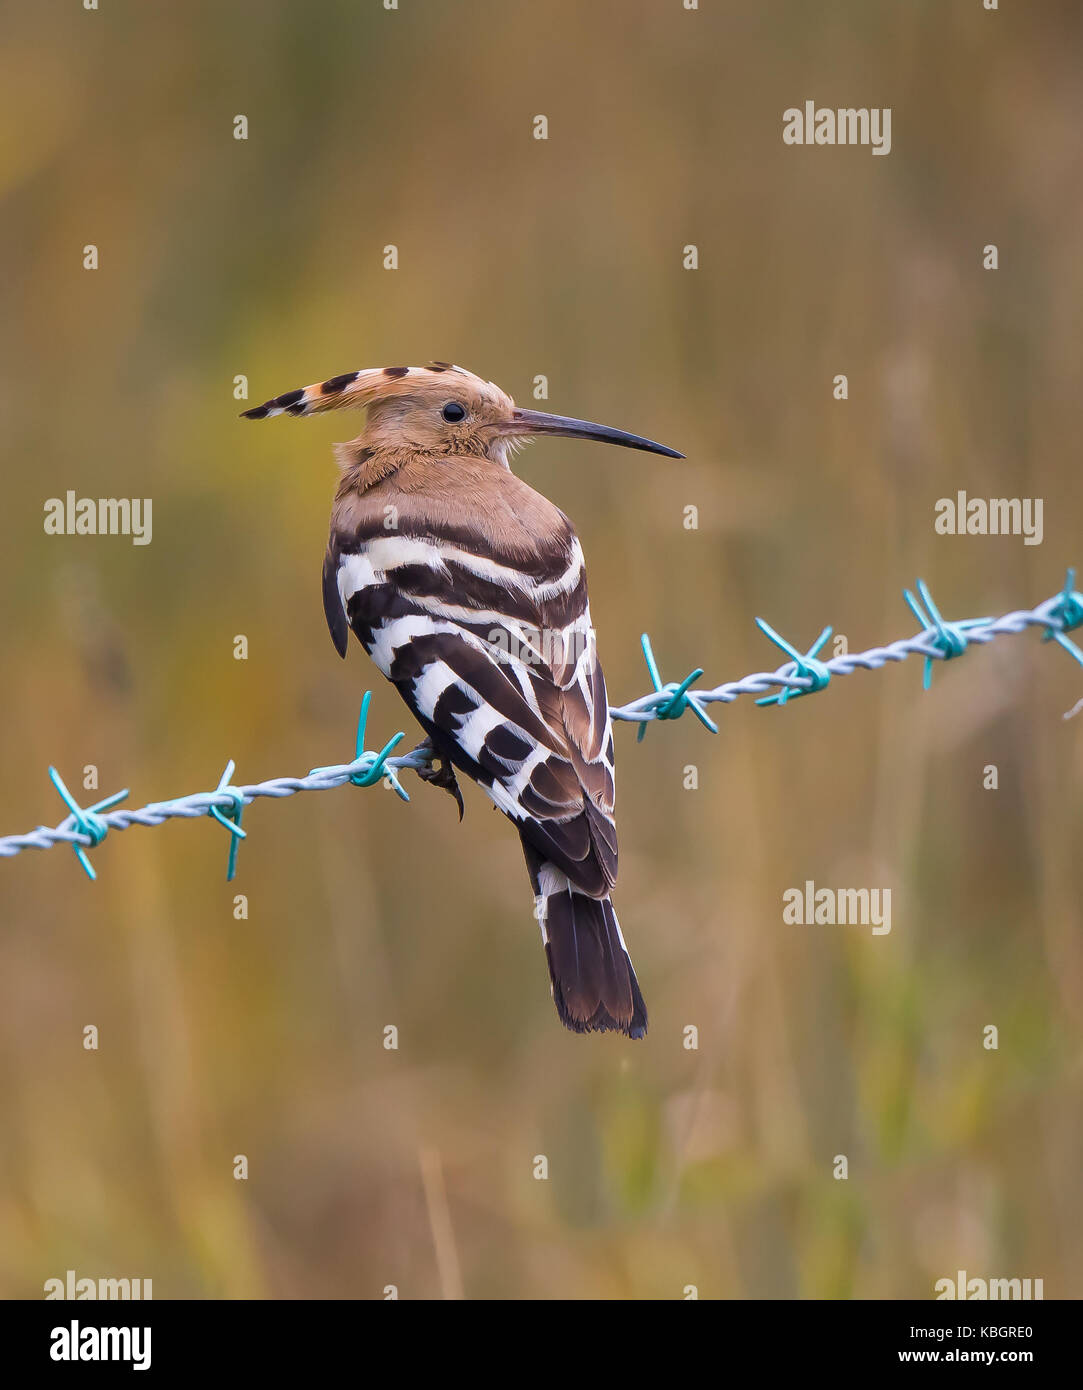 Rückansicht Nahaufnahme eines seltenen, wilden UK Wiedehopf Vogels (Upupa epops) isoliert im Freien, auf Stacheldraht in offenem Grasland Lebensraum, Großbritannien. Stockfoto